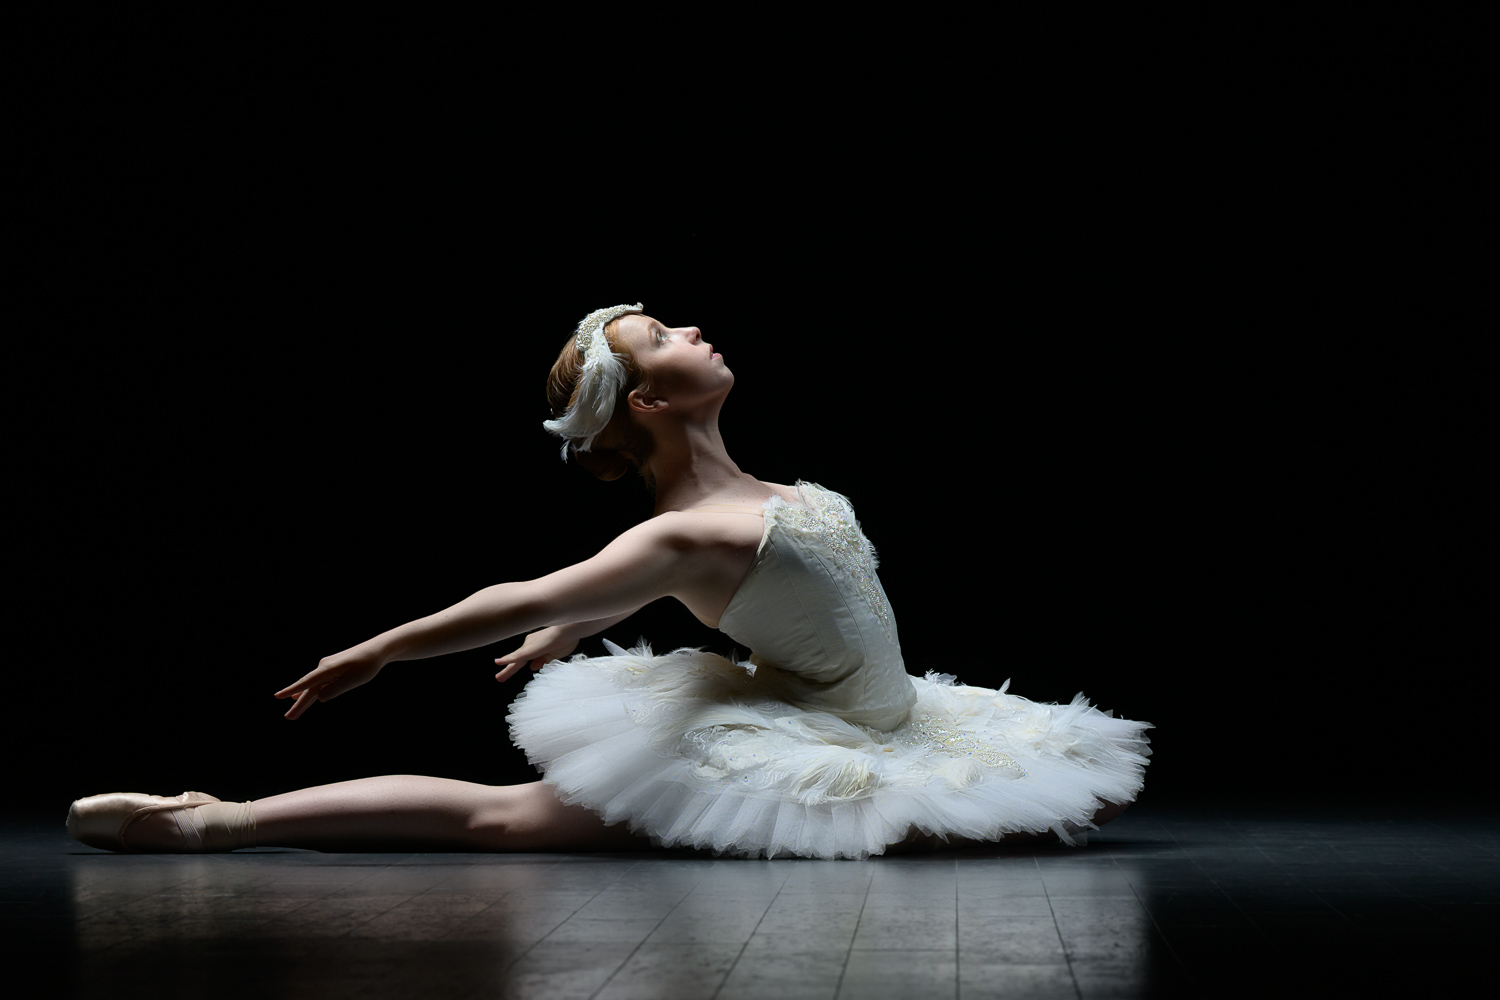 Teen Ballerina in White Swan Tutu